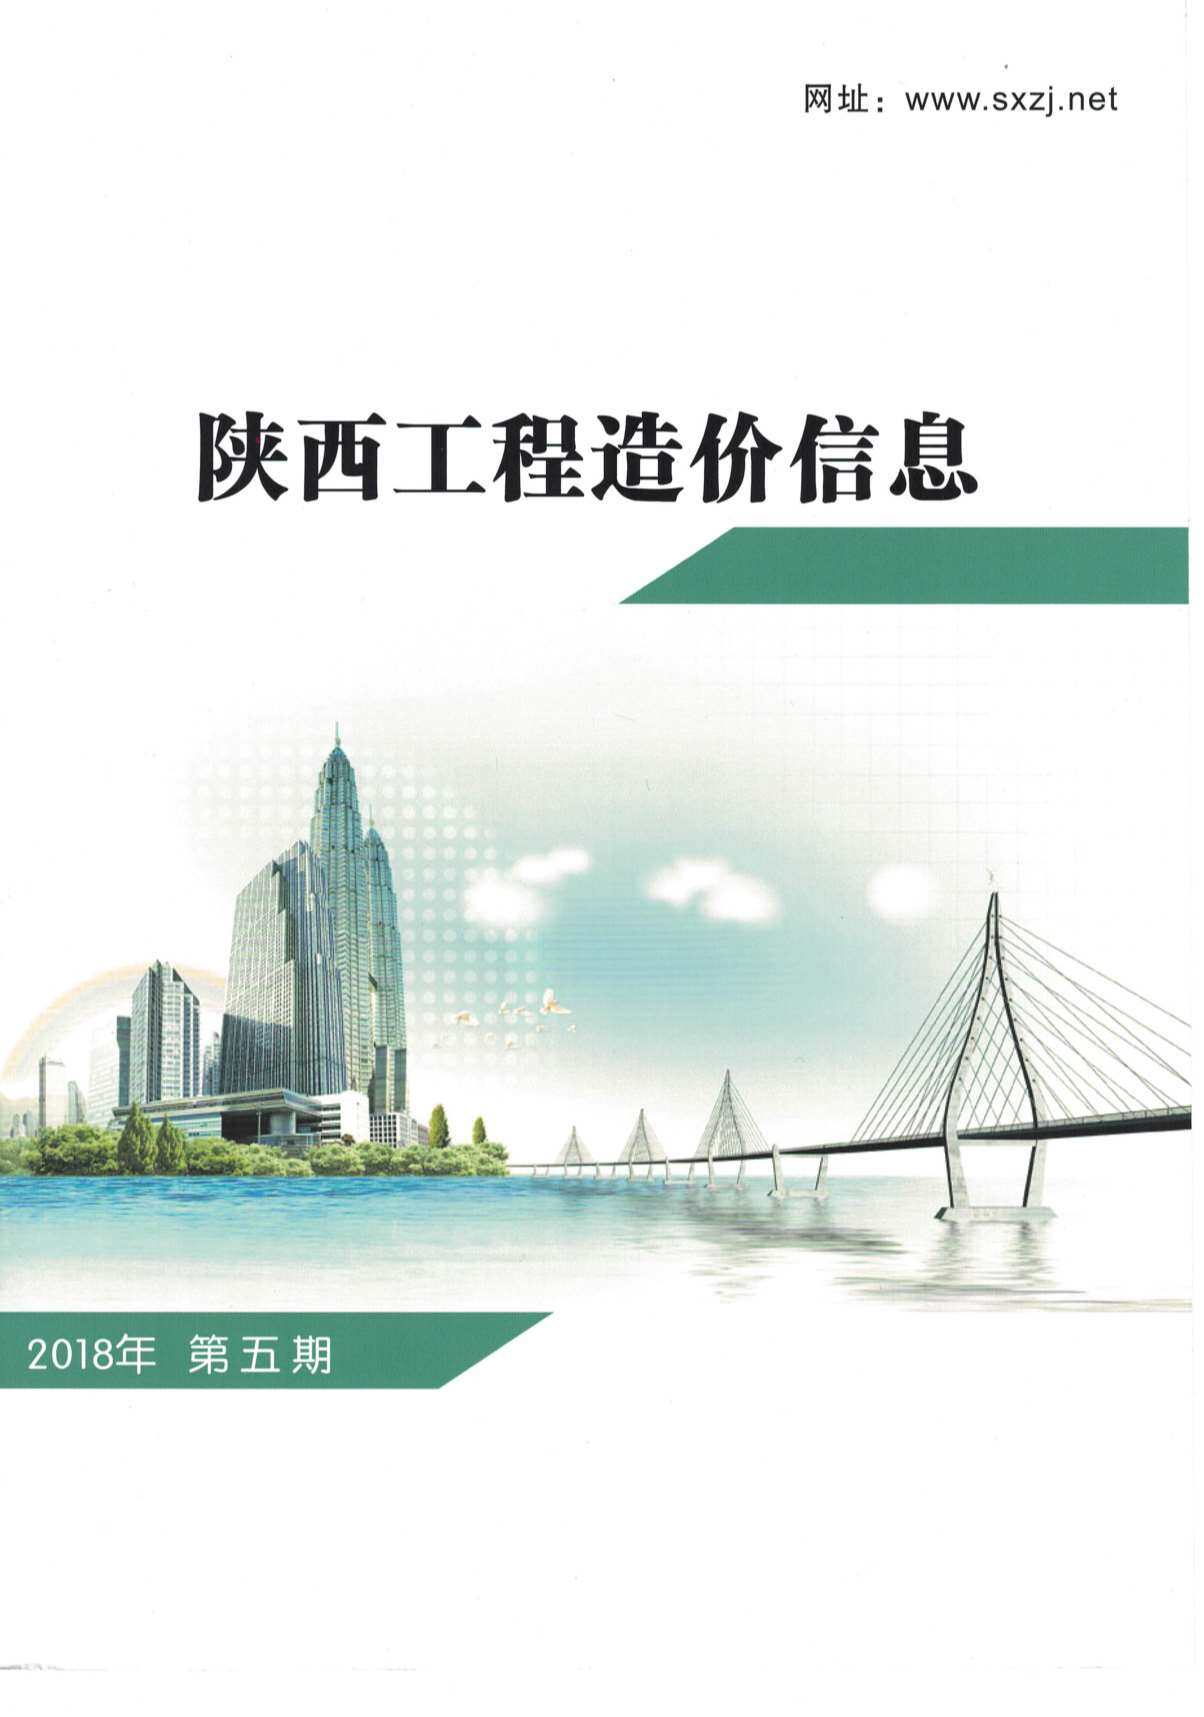 陕西省2018年5月工程造价信息期刊